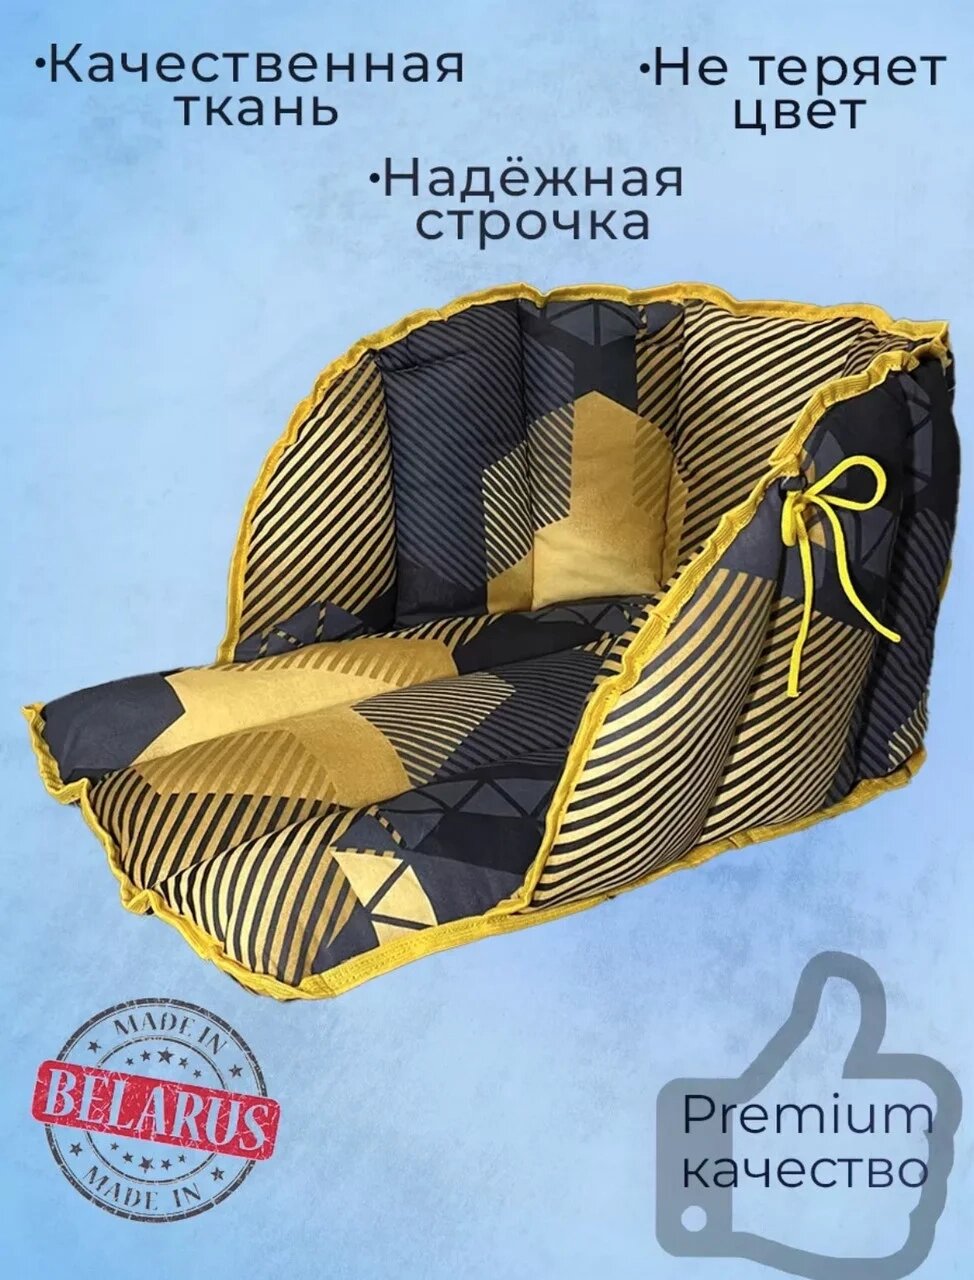 Сиденье (матрасик) для санок  "Дизайн черно-желтый" от компании Интернет-магазин ДИМОХА - товары для семейного отдыха и детей в Минске - фото 1